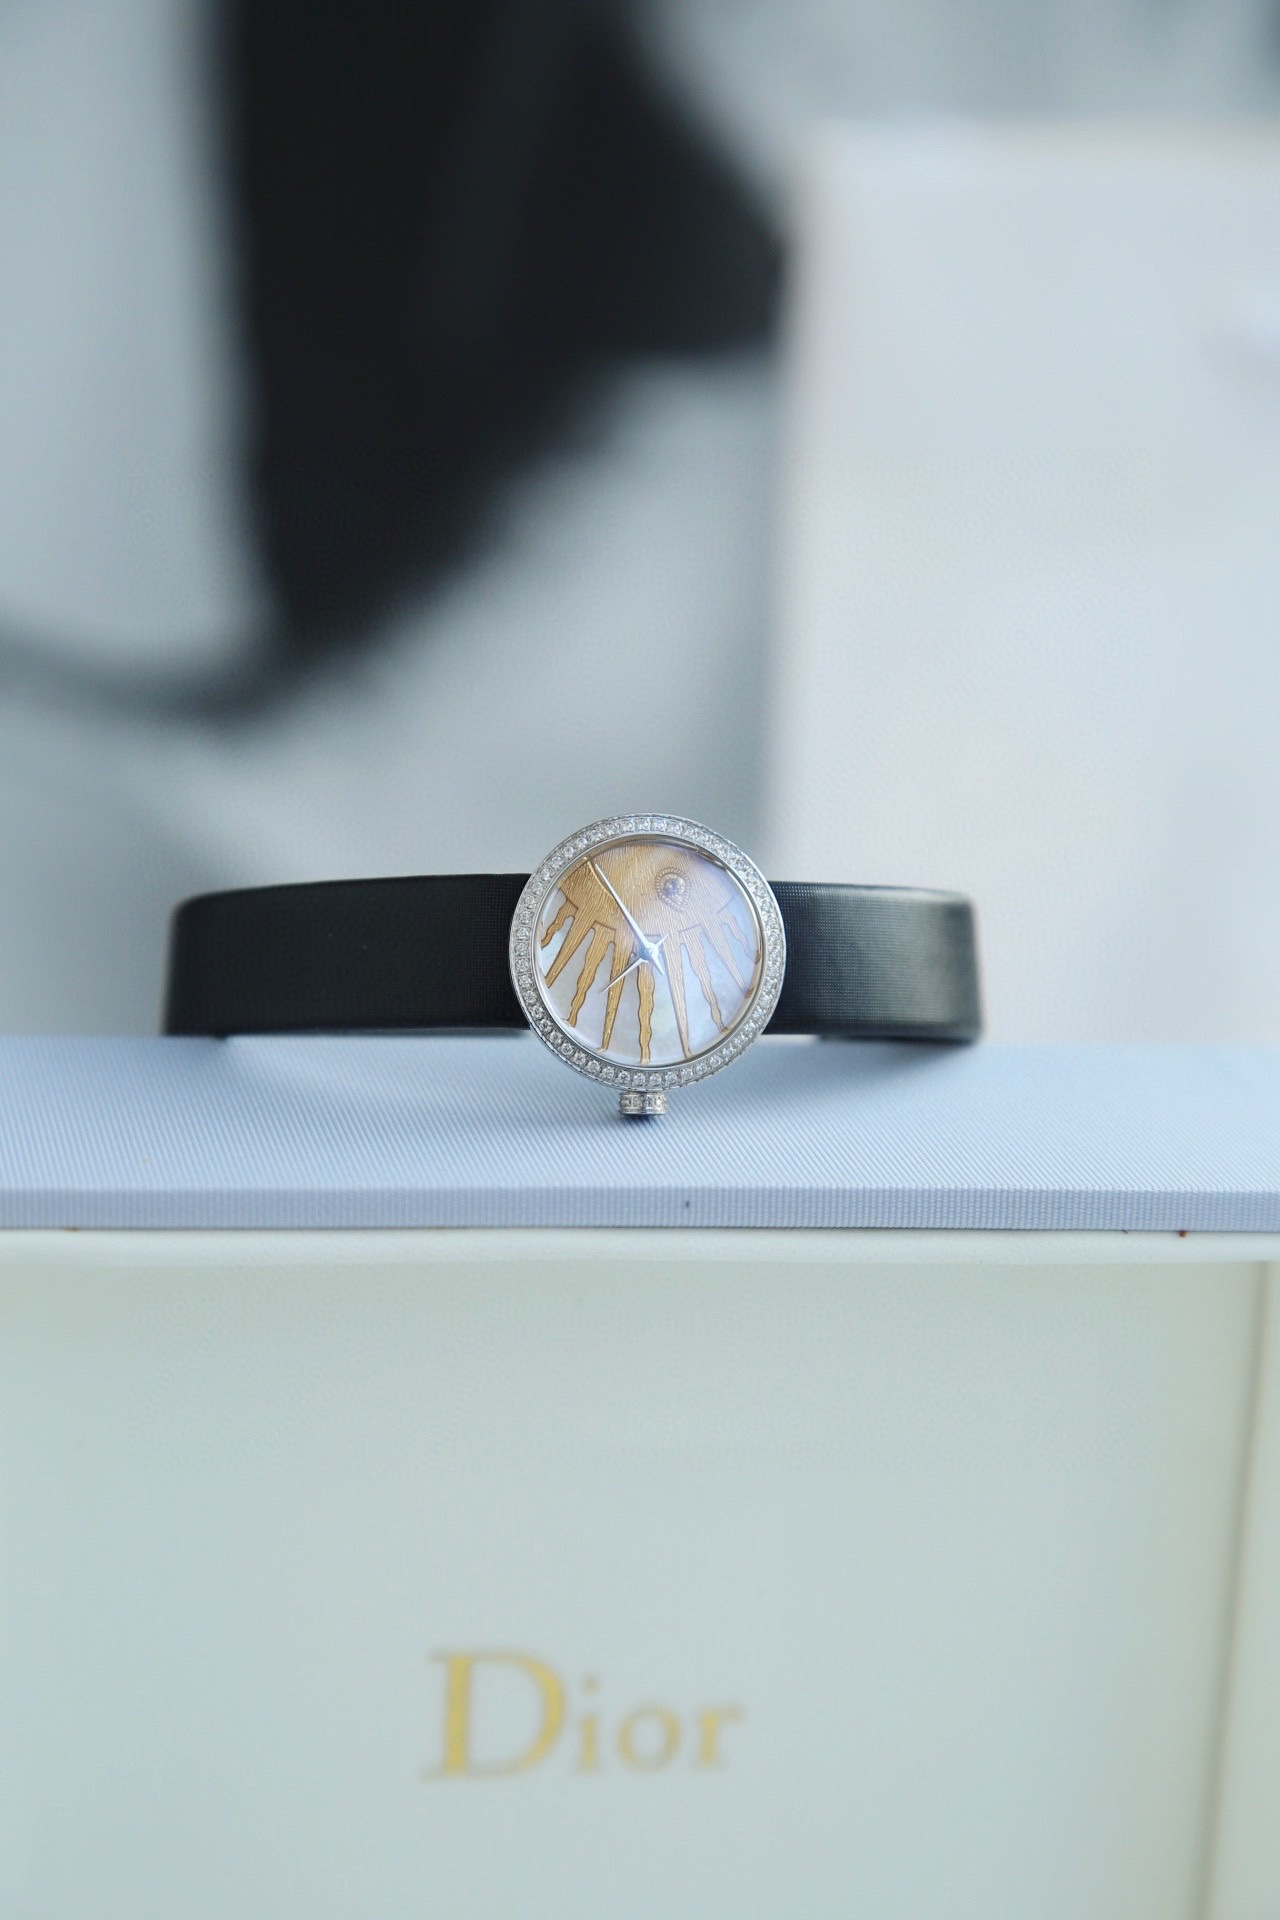 激安大特価 最新作のディオール時計スーパーコピー スイス製クォーツムーブメント_2